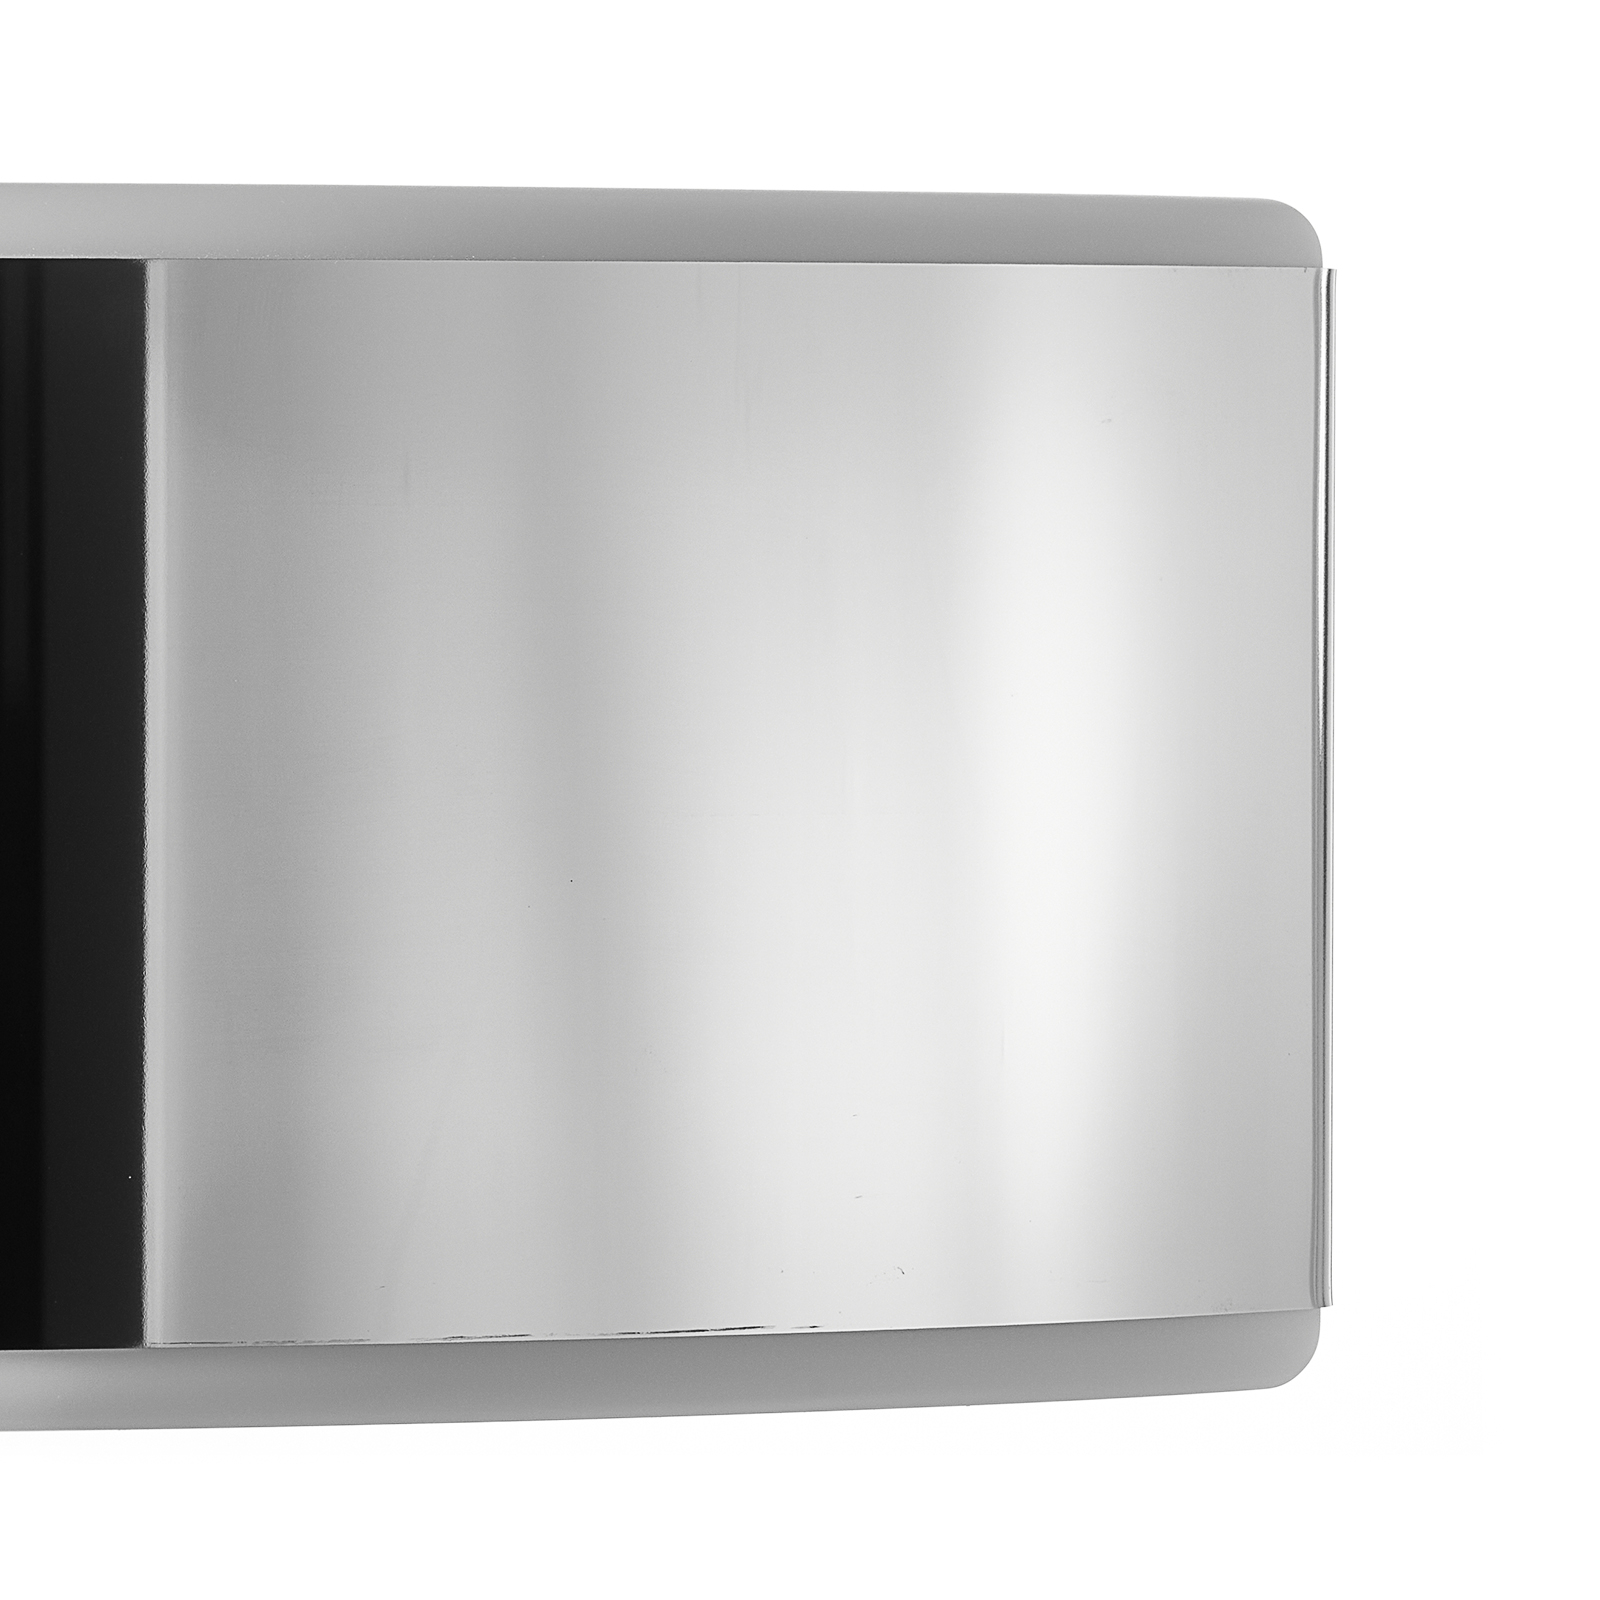 BEGA Prima væglampe, panel, poleret stål, 25,4 cm